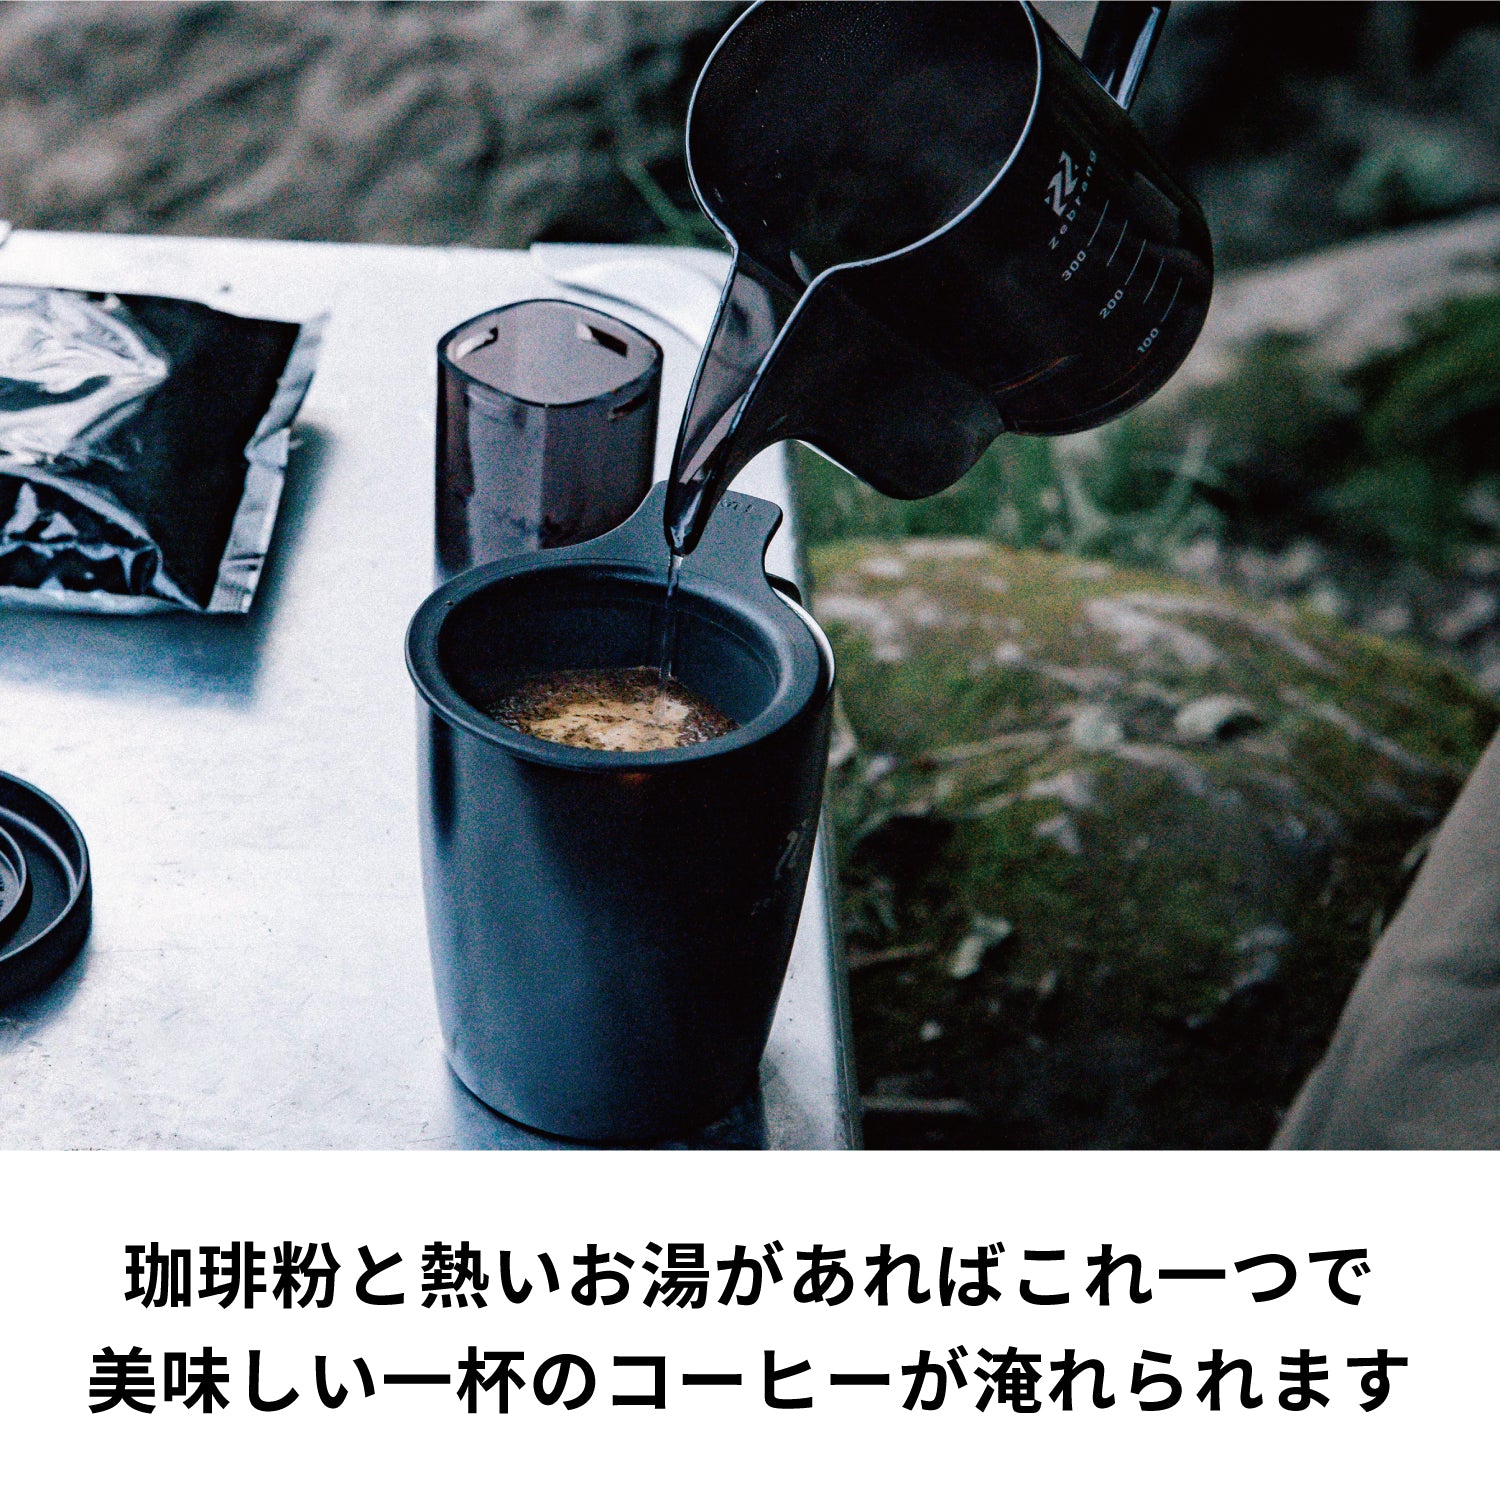 真空二重マグコーヒーメーカー Zebrang – HARIO NETSHOP